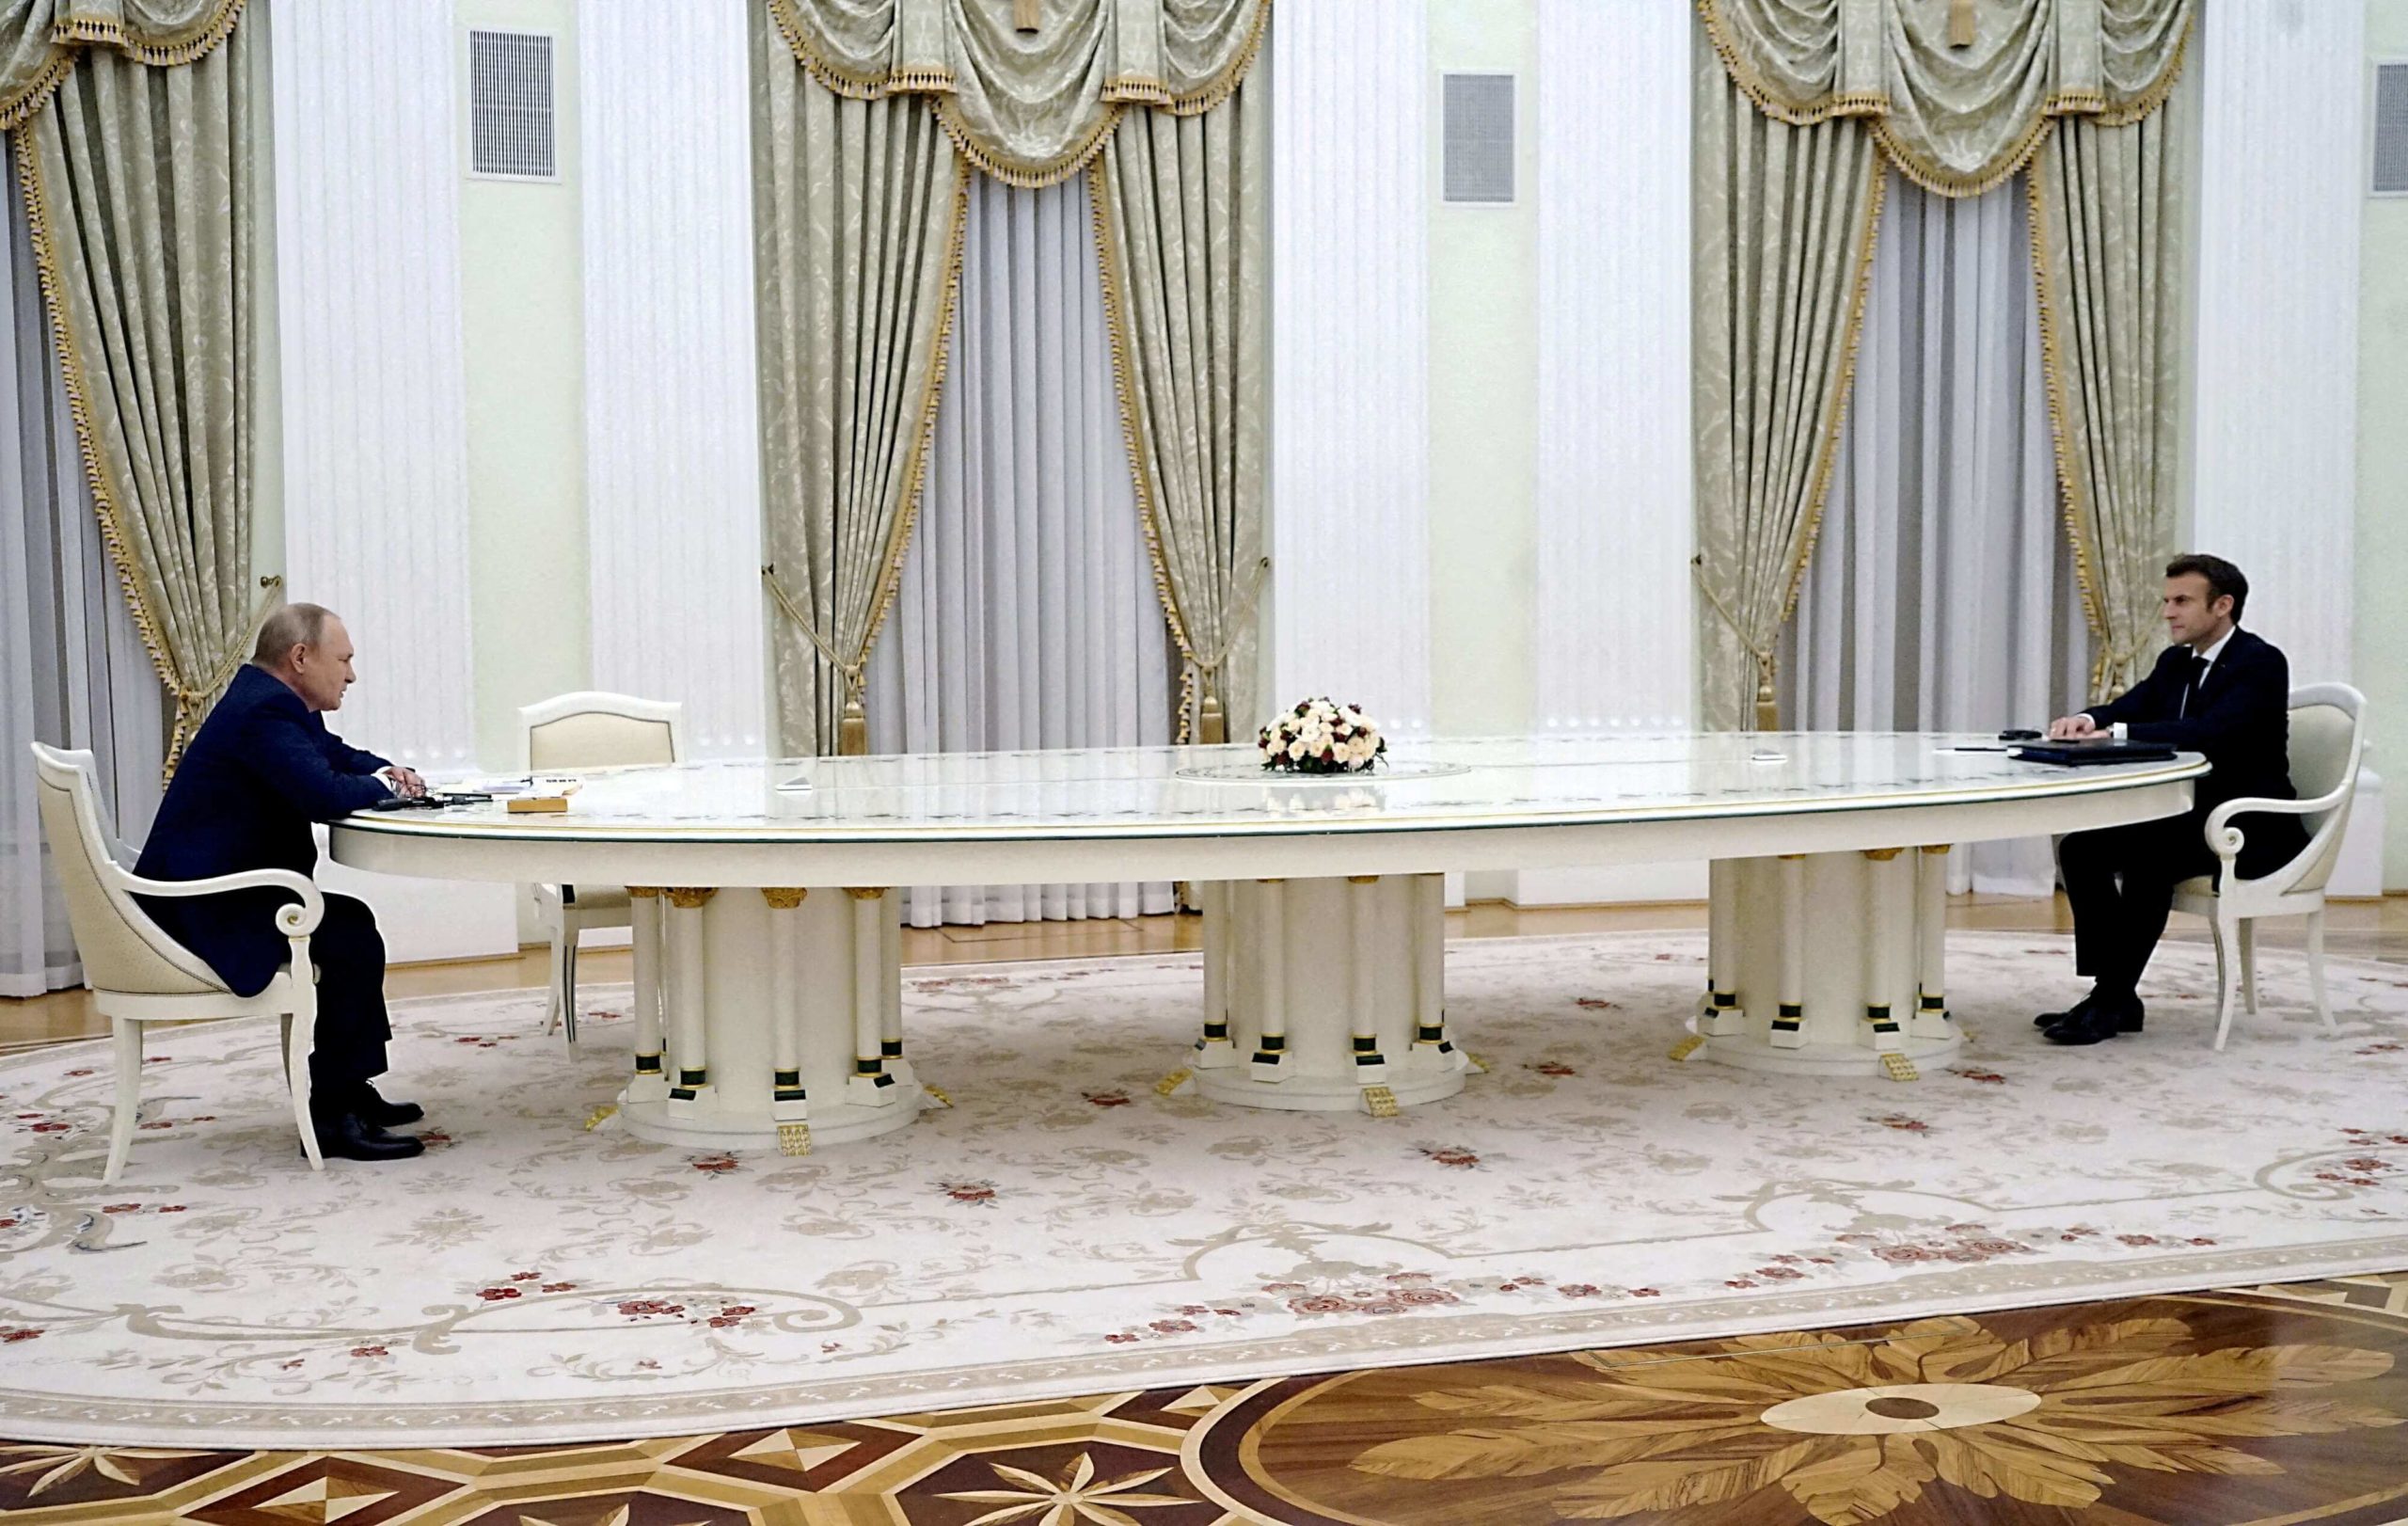 الطاولة البيضاوية الضخمة التي جلس إليها الرئيسان الروسي فلاديمير بوتين وضيفه الفرنسي إيمانويل ماكرون